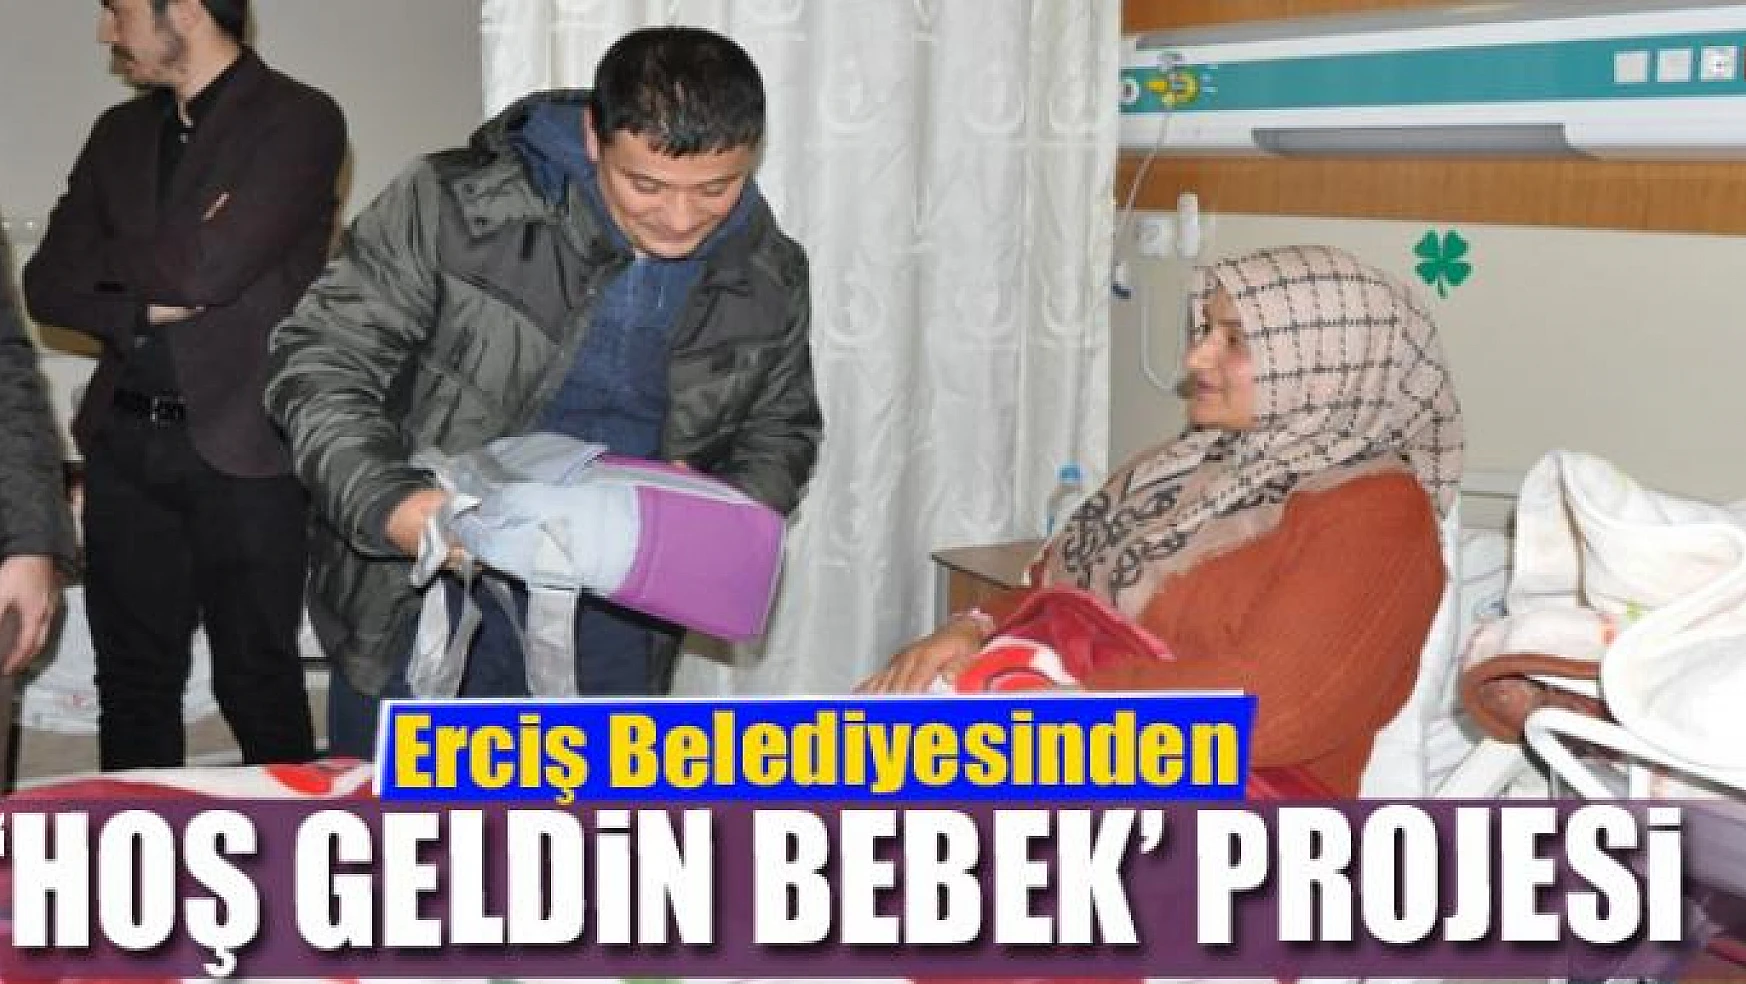 Erciş Belediyesinden 'Hoş Geldin Bebek' projesi